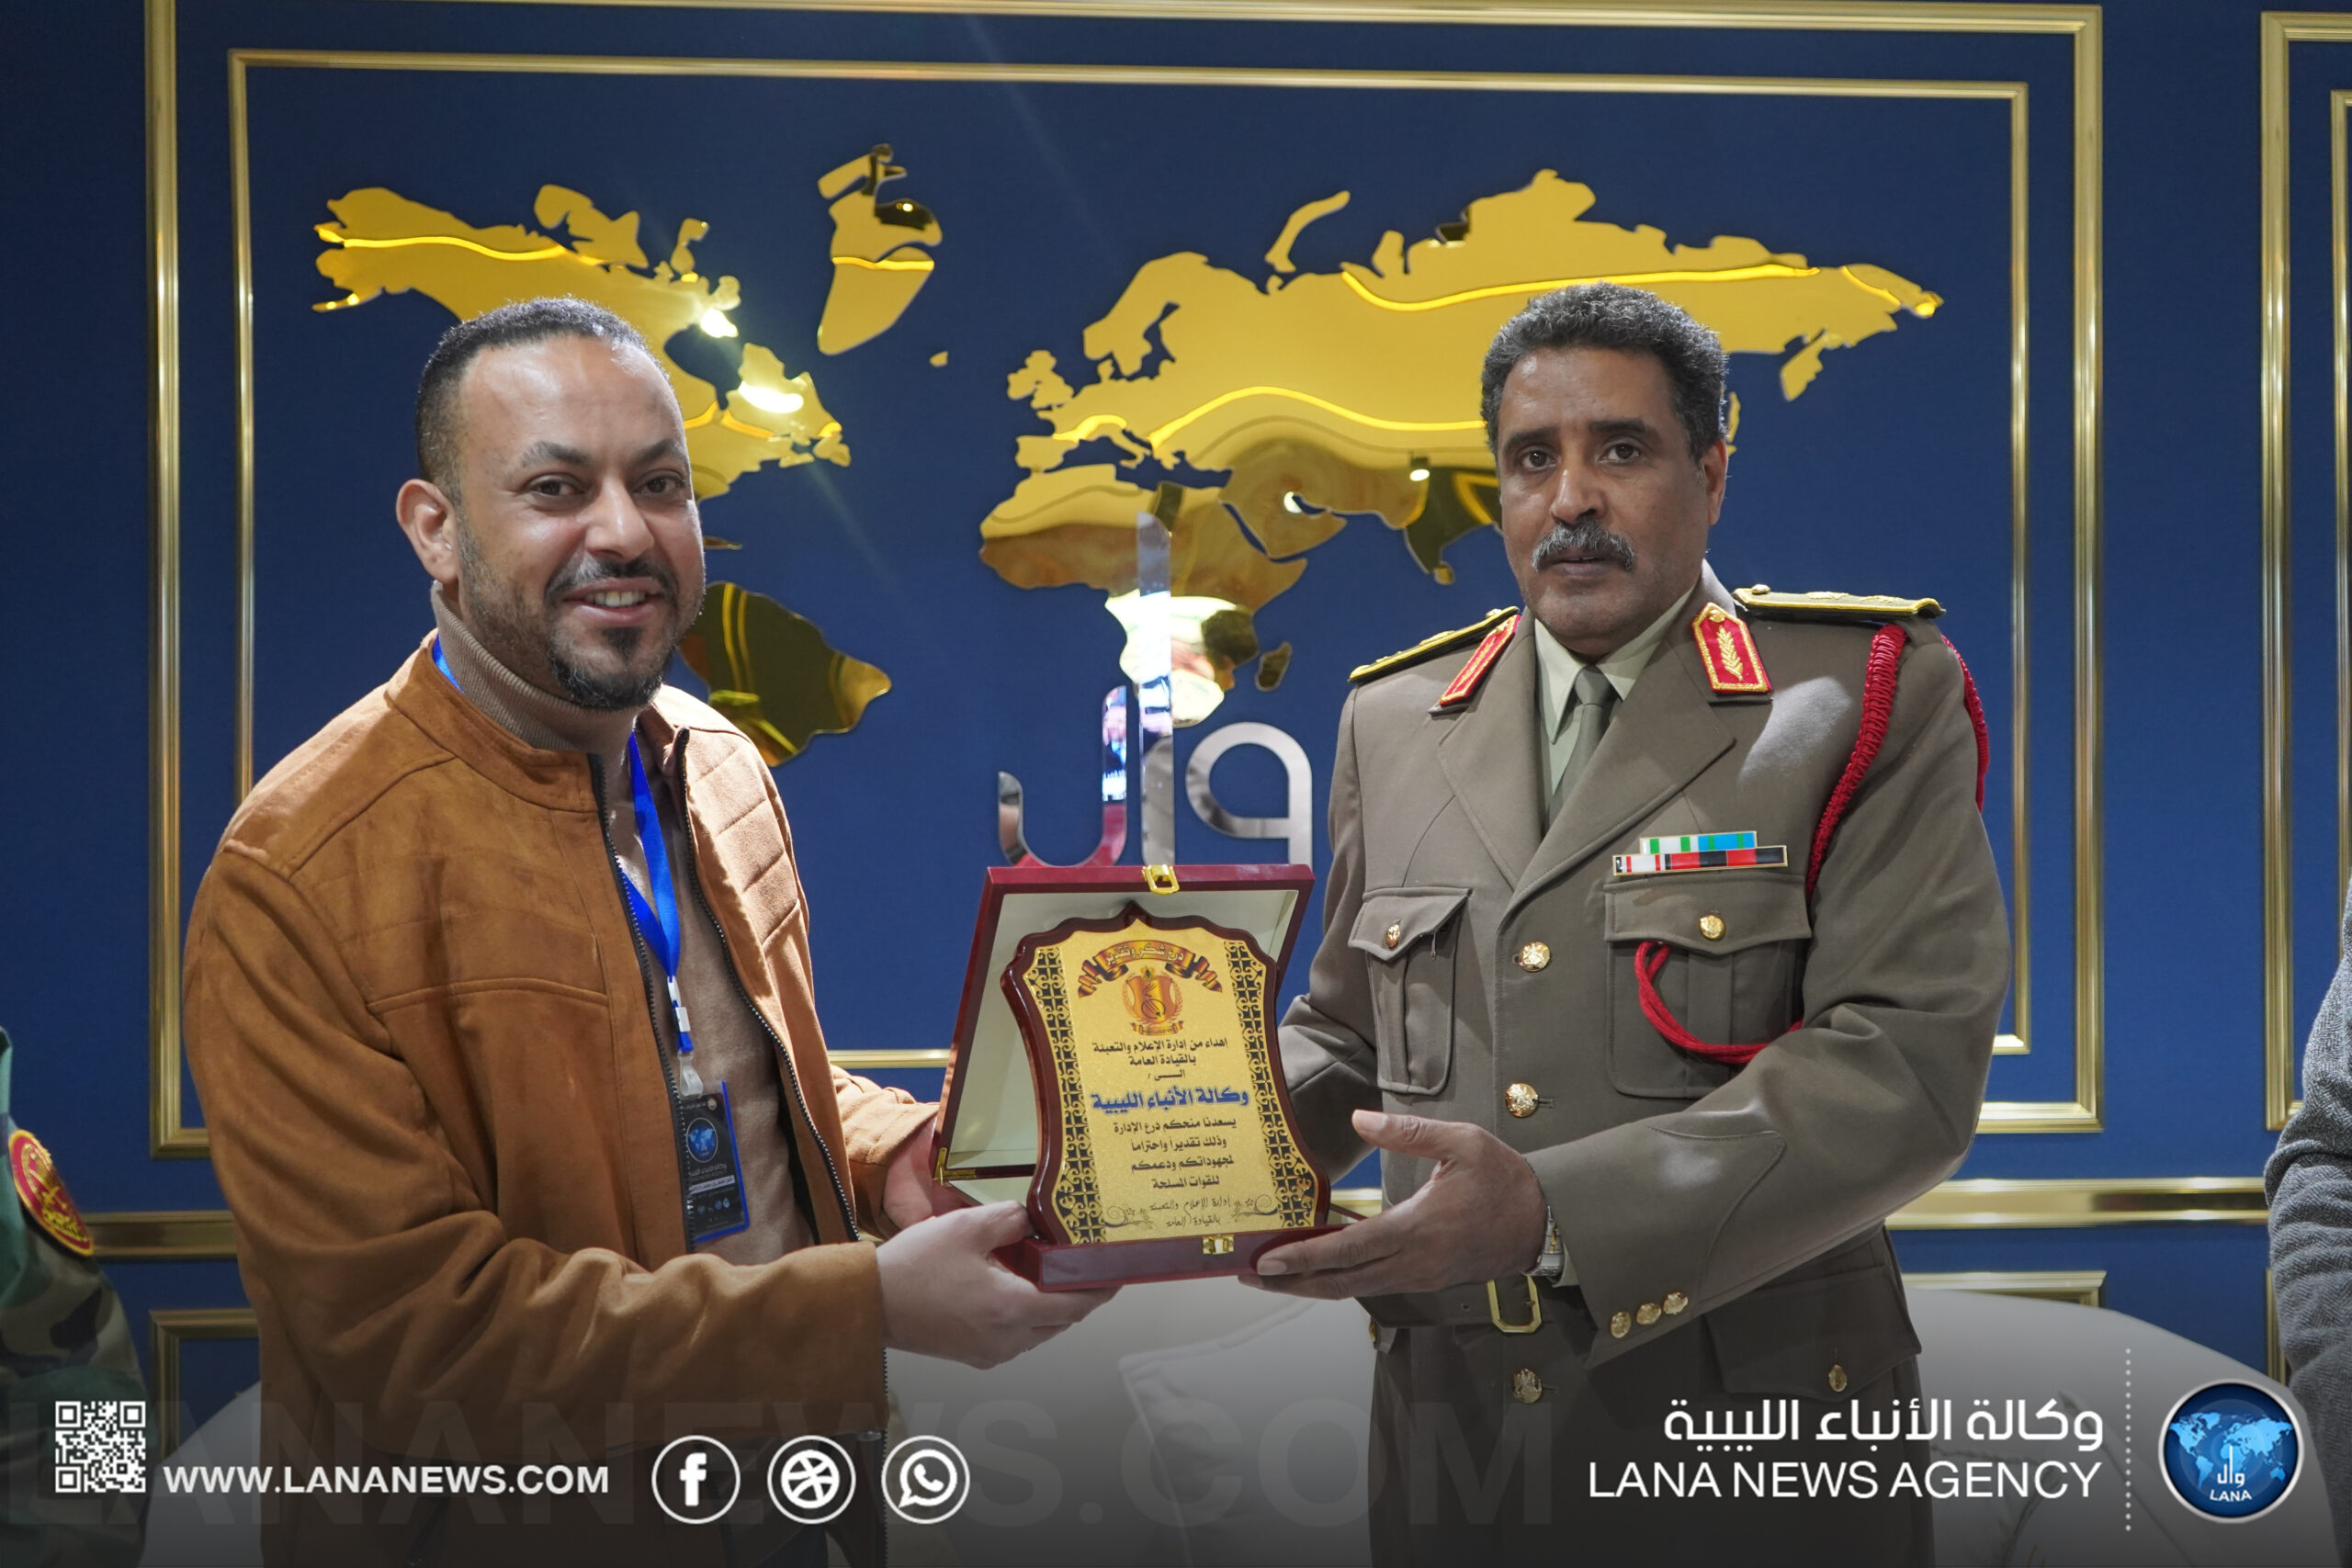 اللواء أحمد المسماري يجري زيارة لمقر الإدارة العامة لوكالة الأنباء الليبية في بنغازي